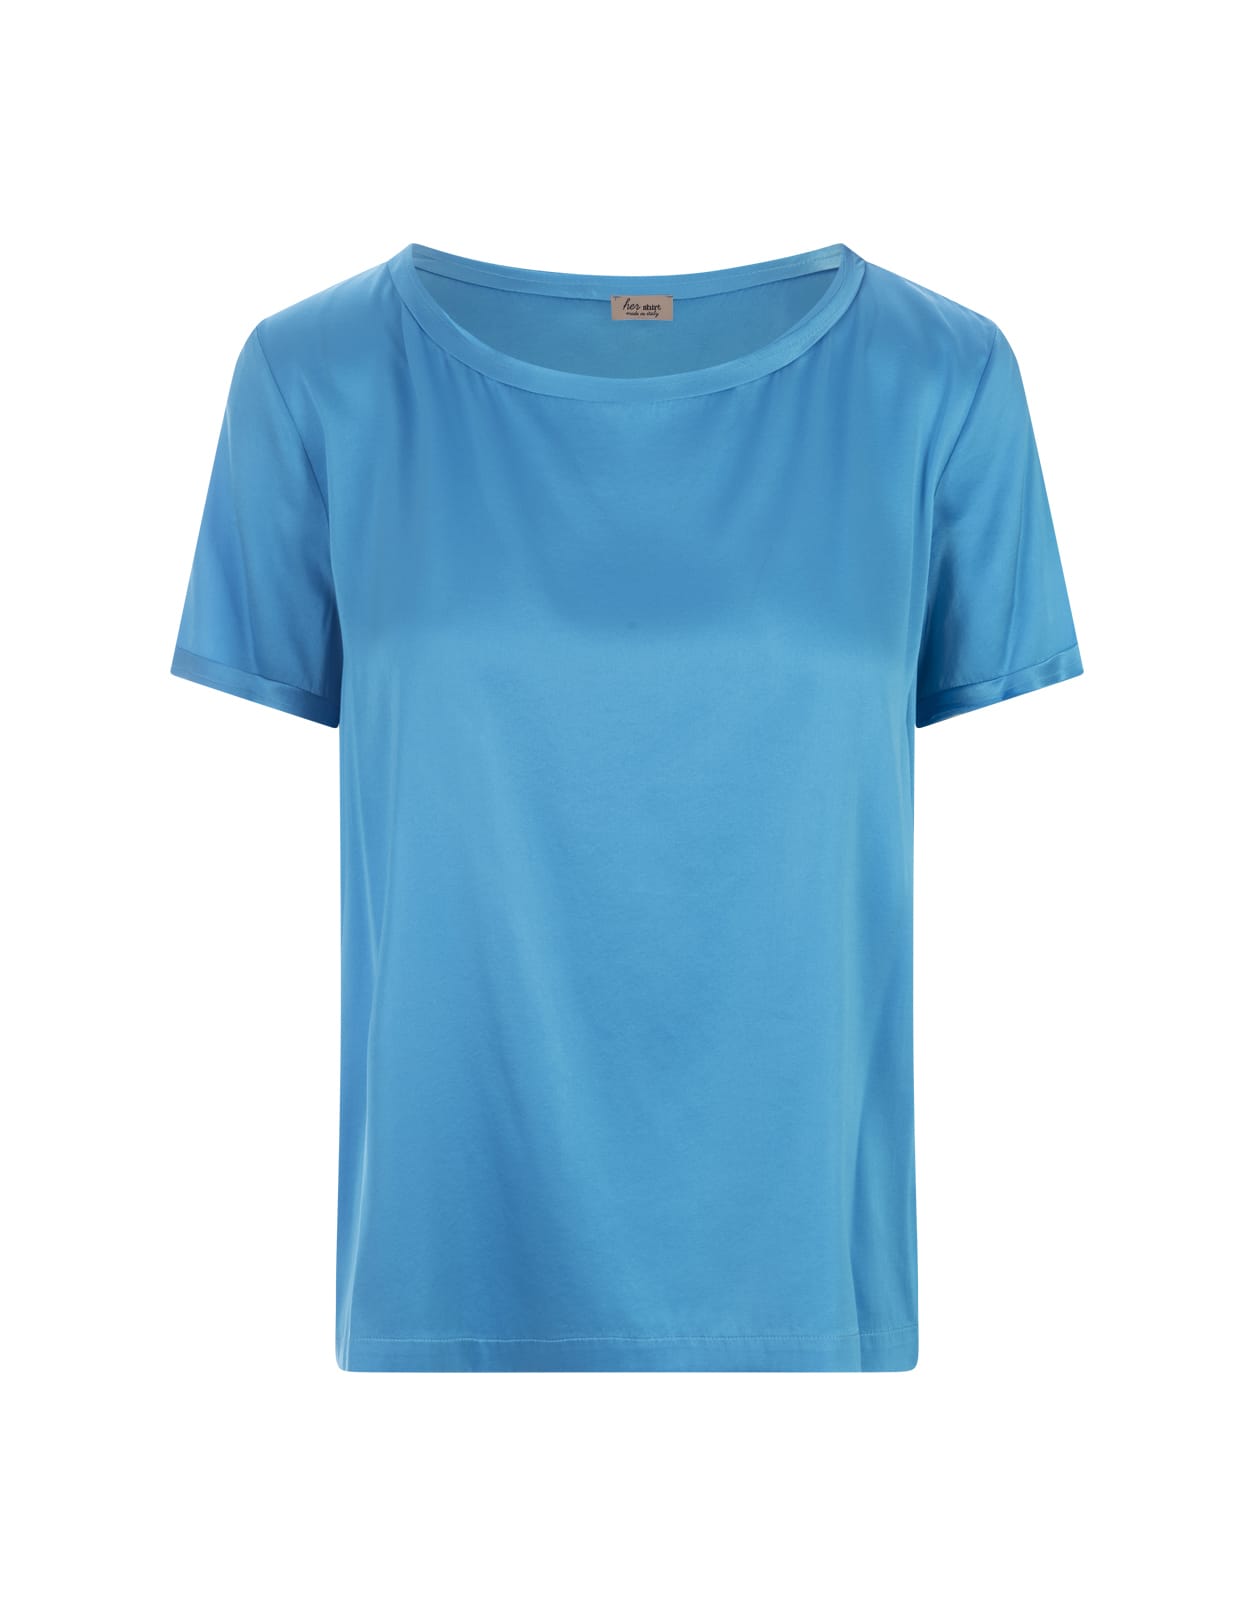 Her Shirt Blue Silk T-shirt